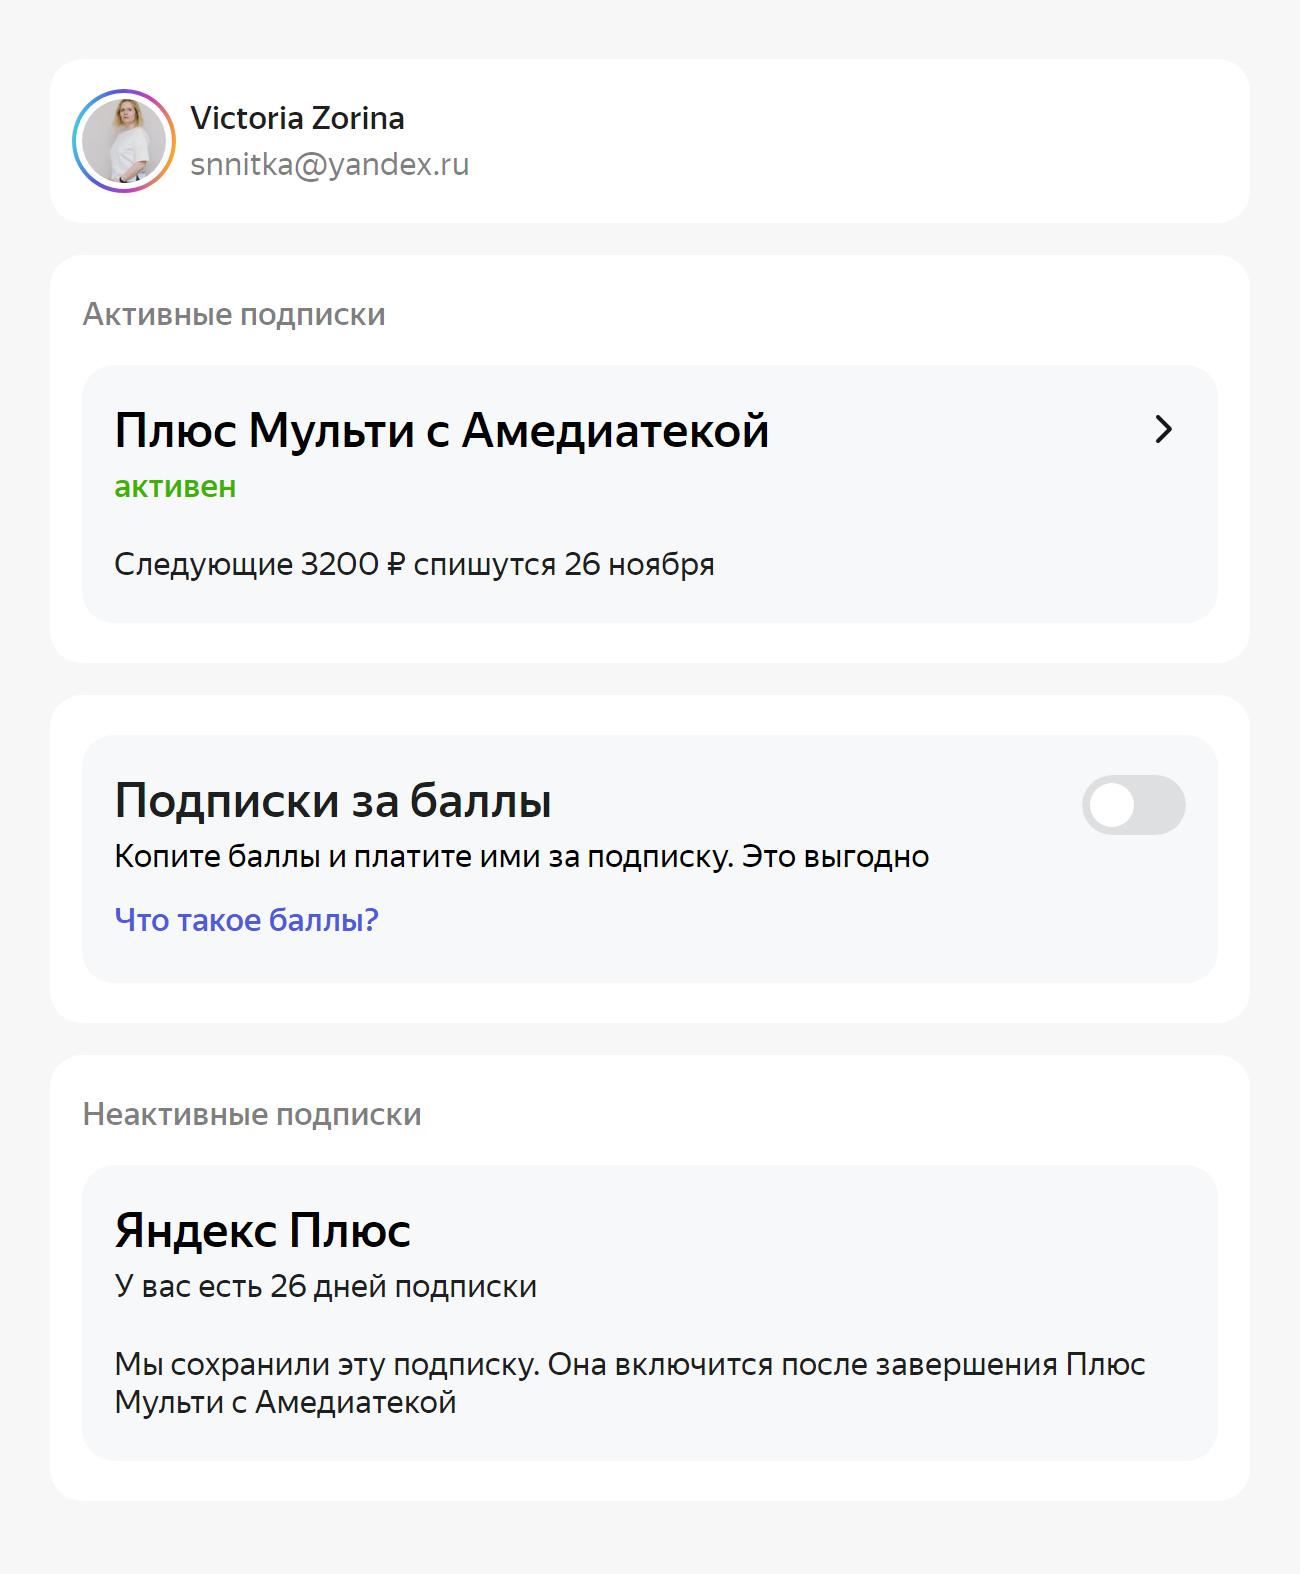 Я подписалась на «Плюс⁠-⁠мульти с „Амедиатекой“», когда подписка «Яндекс-плюс» еще не истекла. Оказалось, оставшиеся месяцы не сгорели — подписка включится снова, когда закончится «Плюс⁠-⁠мульти с „Амедиатекой“»